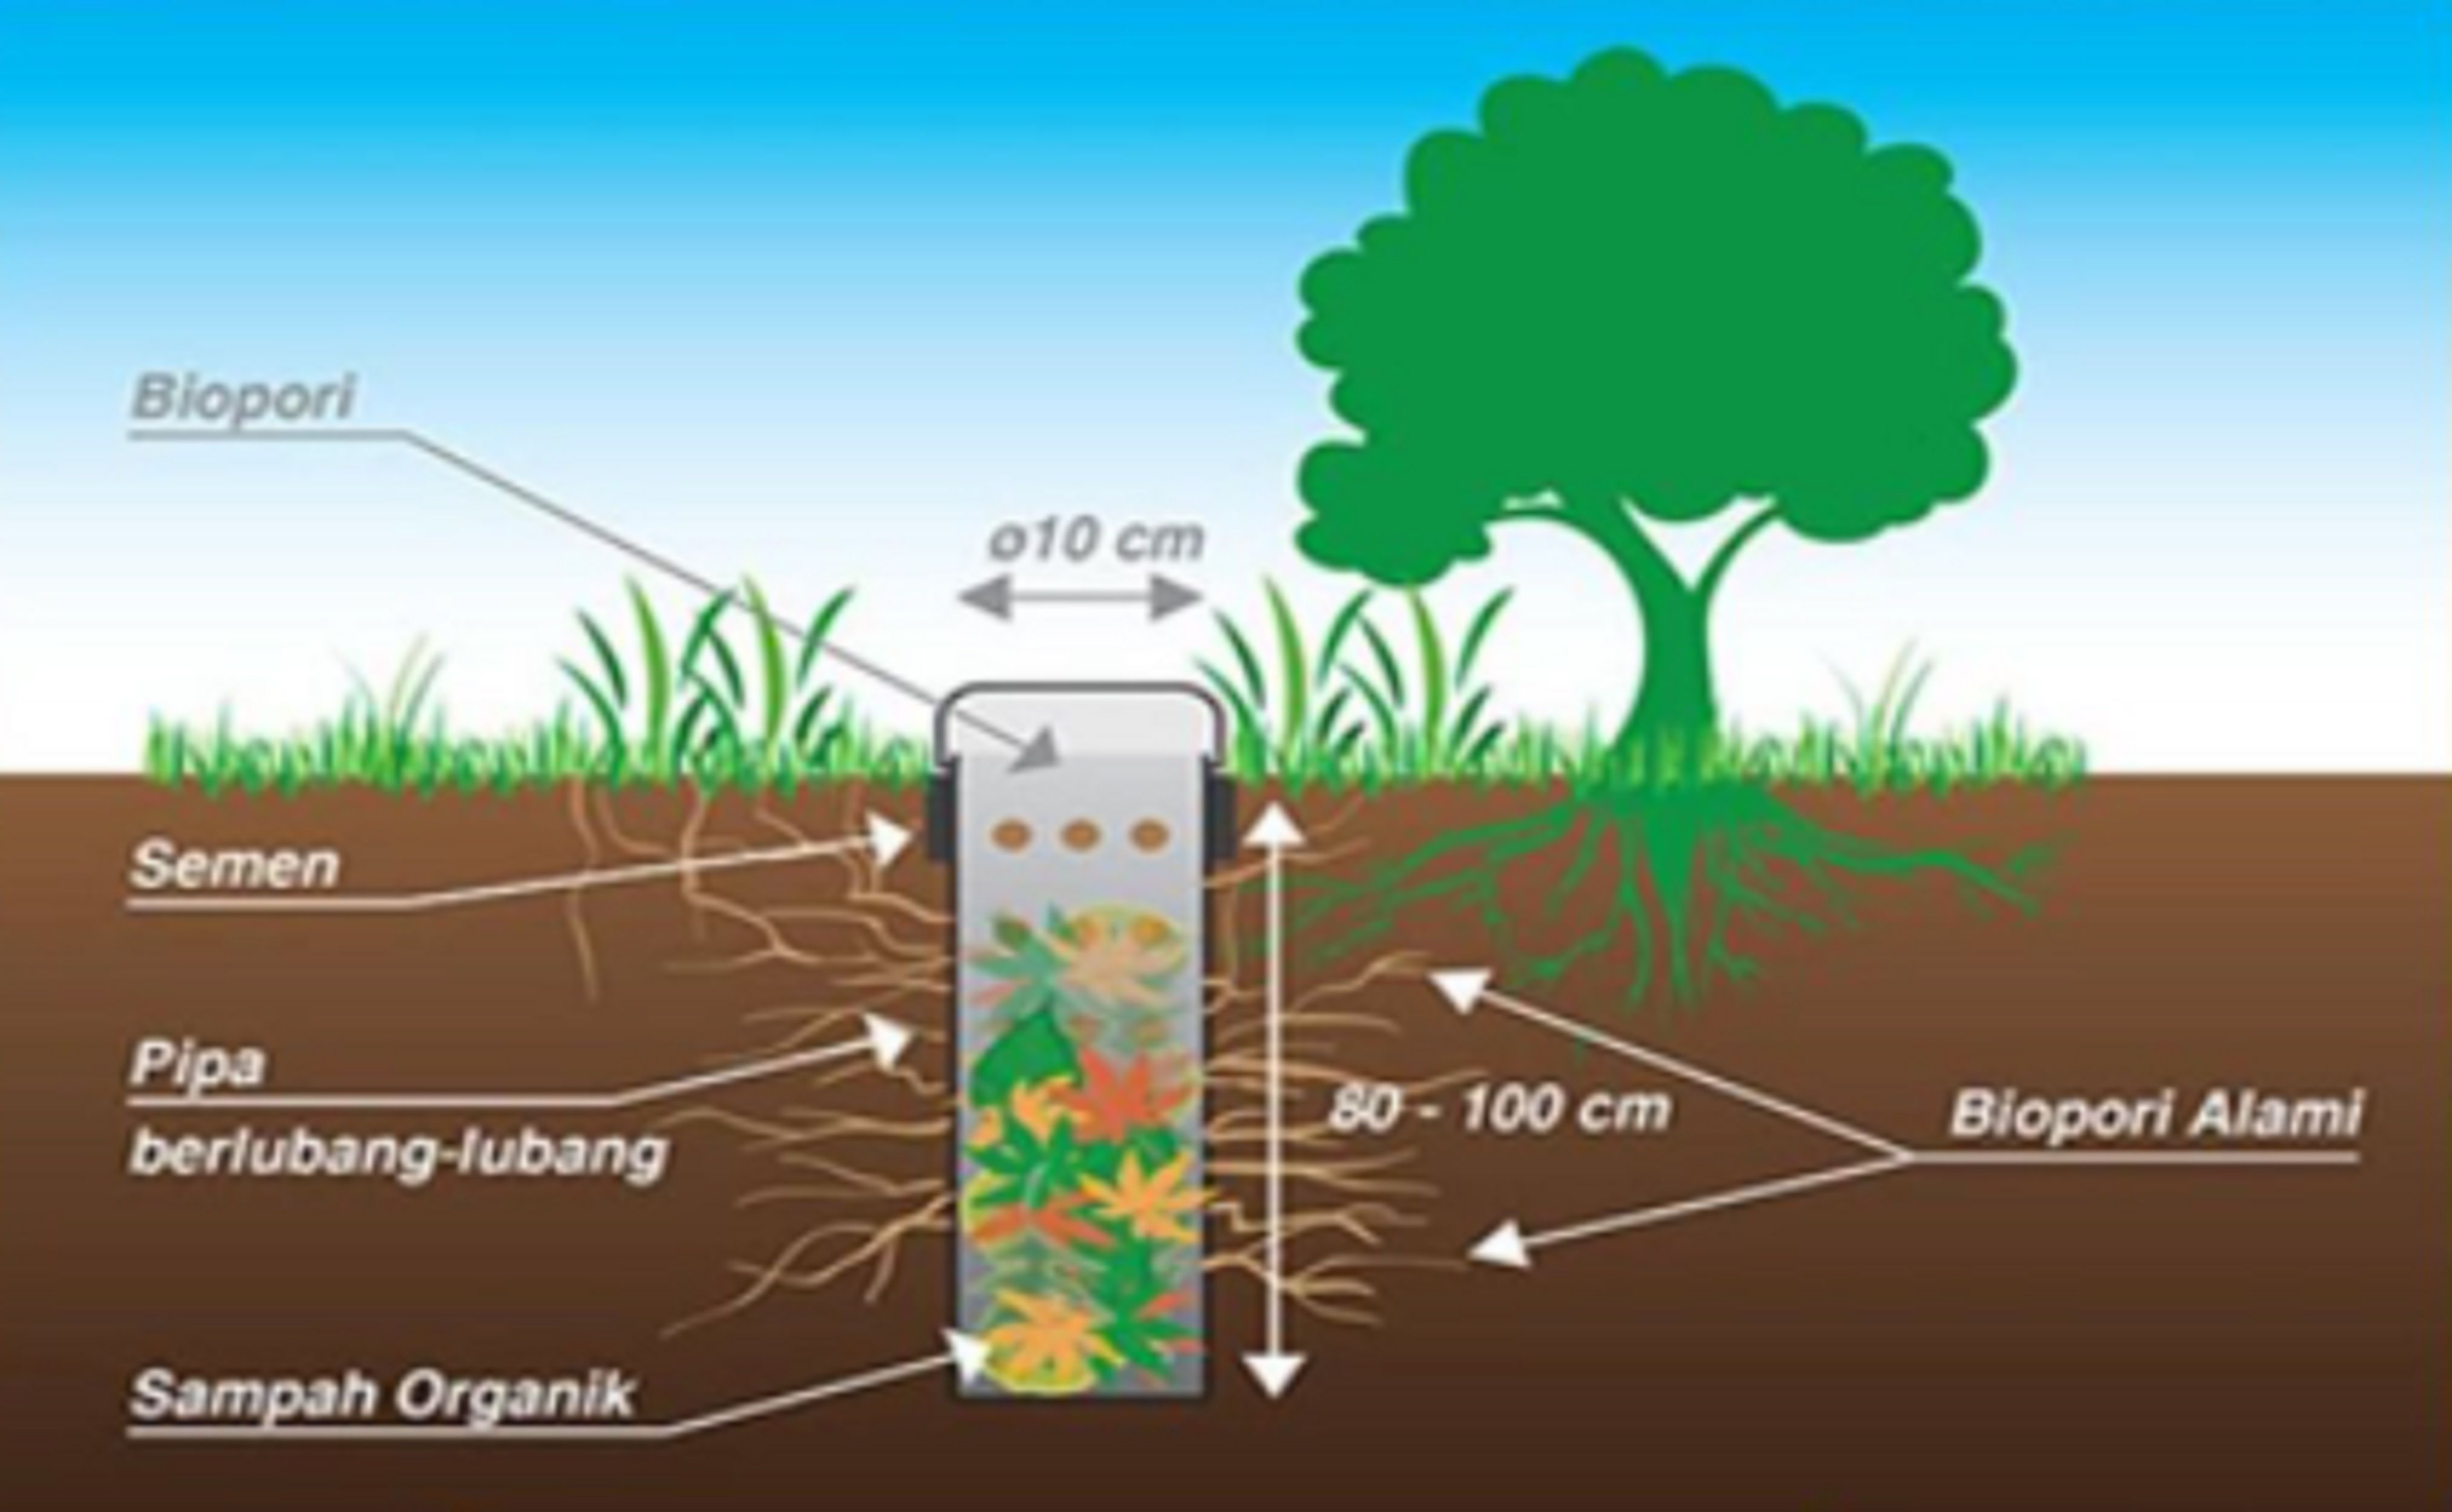 4 Manfaat Biopori, Bisa Mencegah Banjir Hingga Mengurangi Sampah Organik